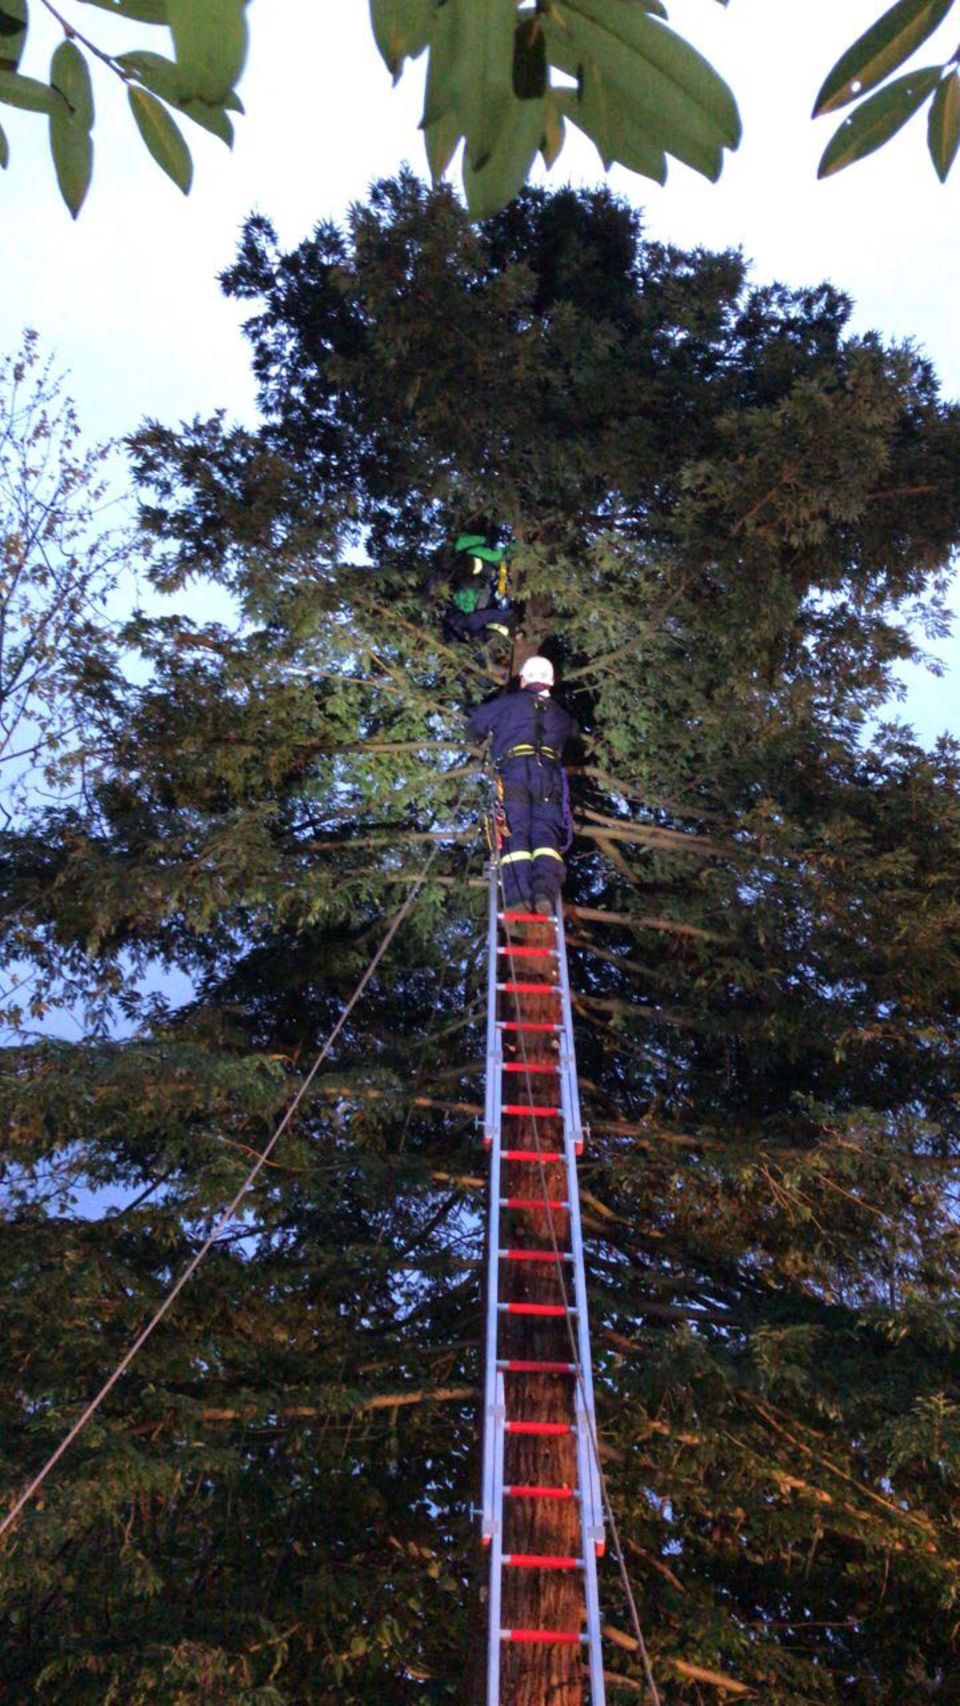 Aufwendige Rettungsaktion in Erkrath: Feuerwehrleute sind auf einer Leiter zu dem Jungen hochgeklettert